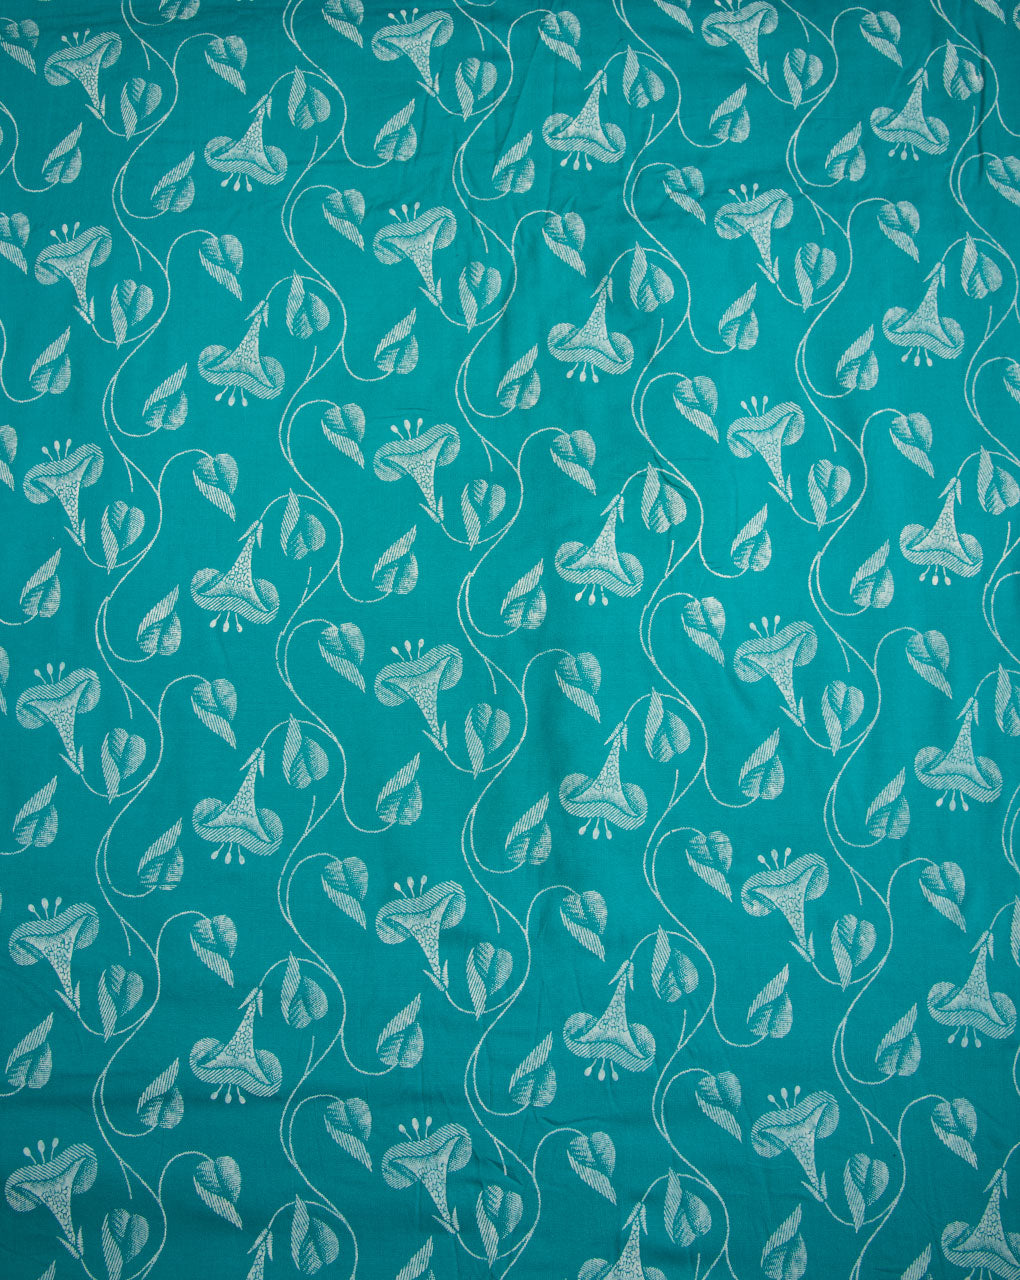 Khari Screen Print Rayon Modal Fabric - Fabriclore.com